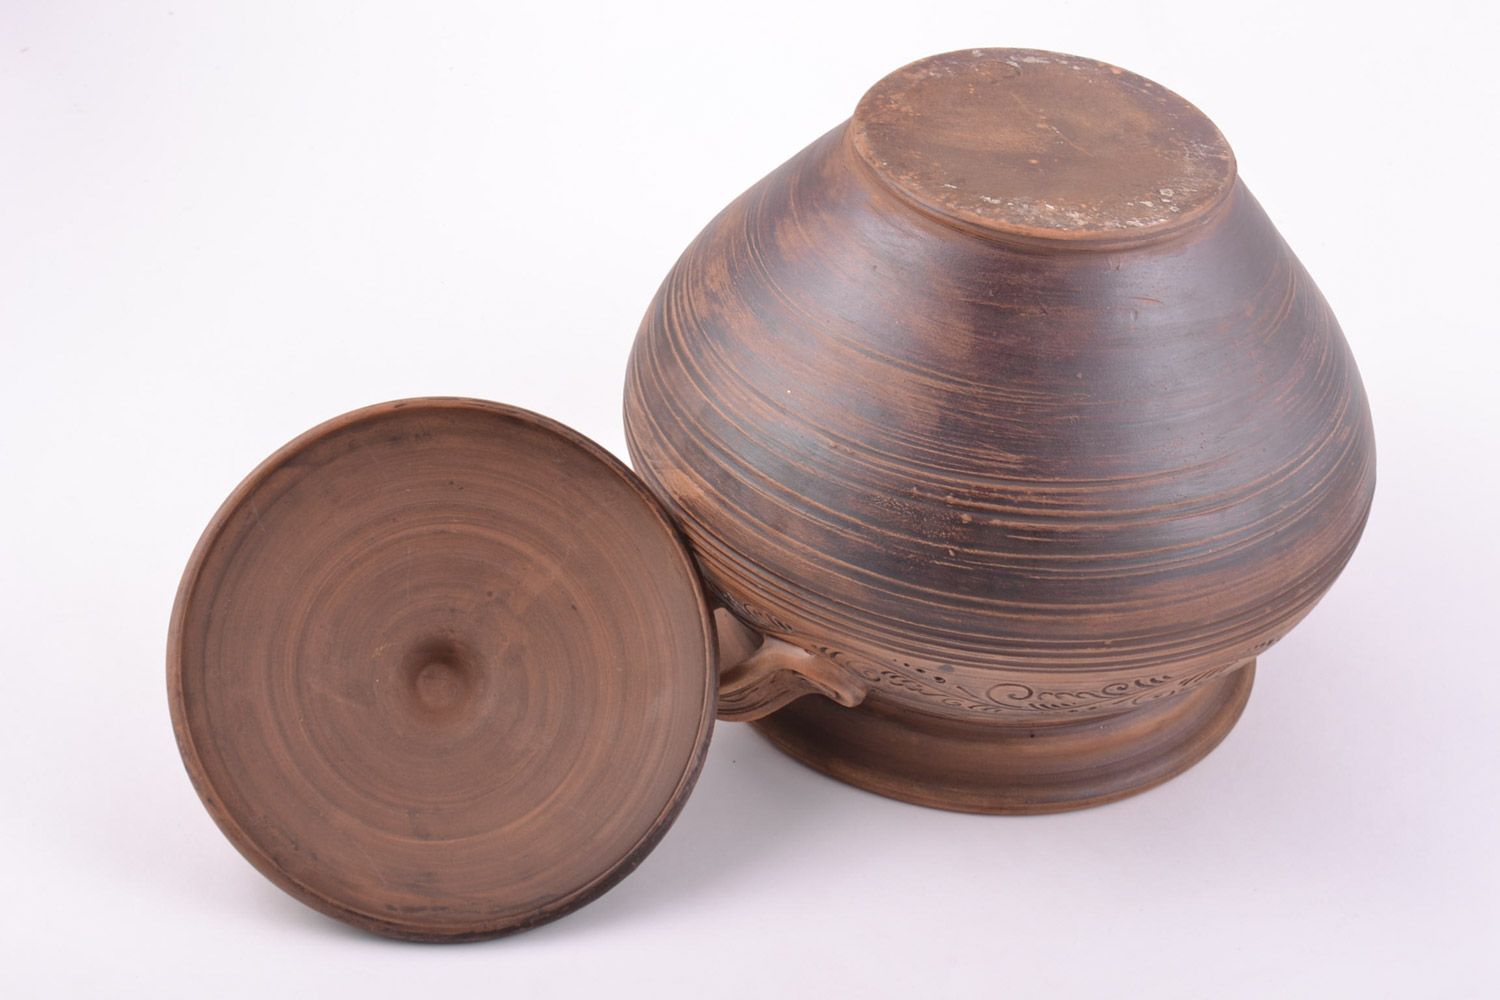 Großer handmade Keramik Topf mit Deckel Handarbeit 4 l in Braun für Backen  foto 5